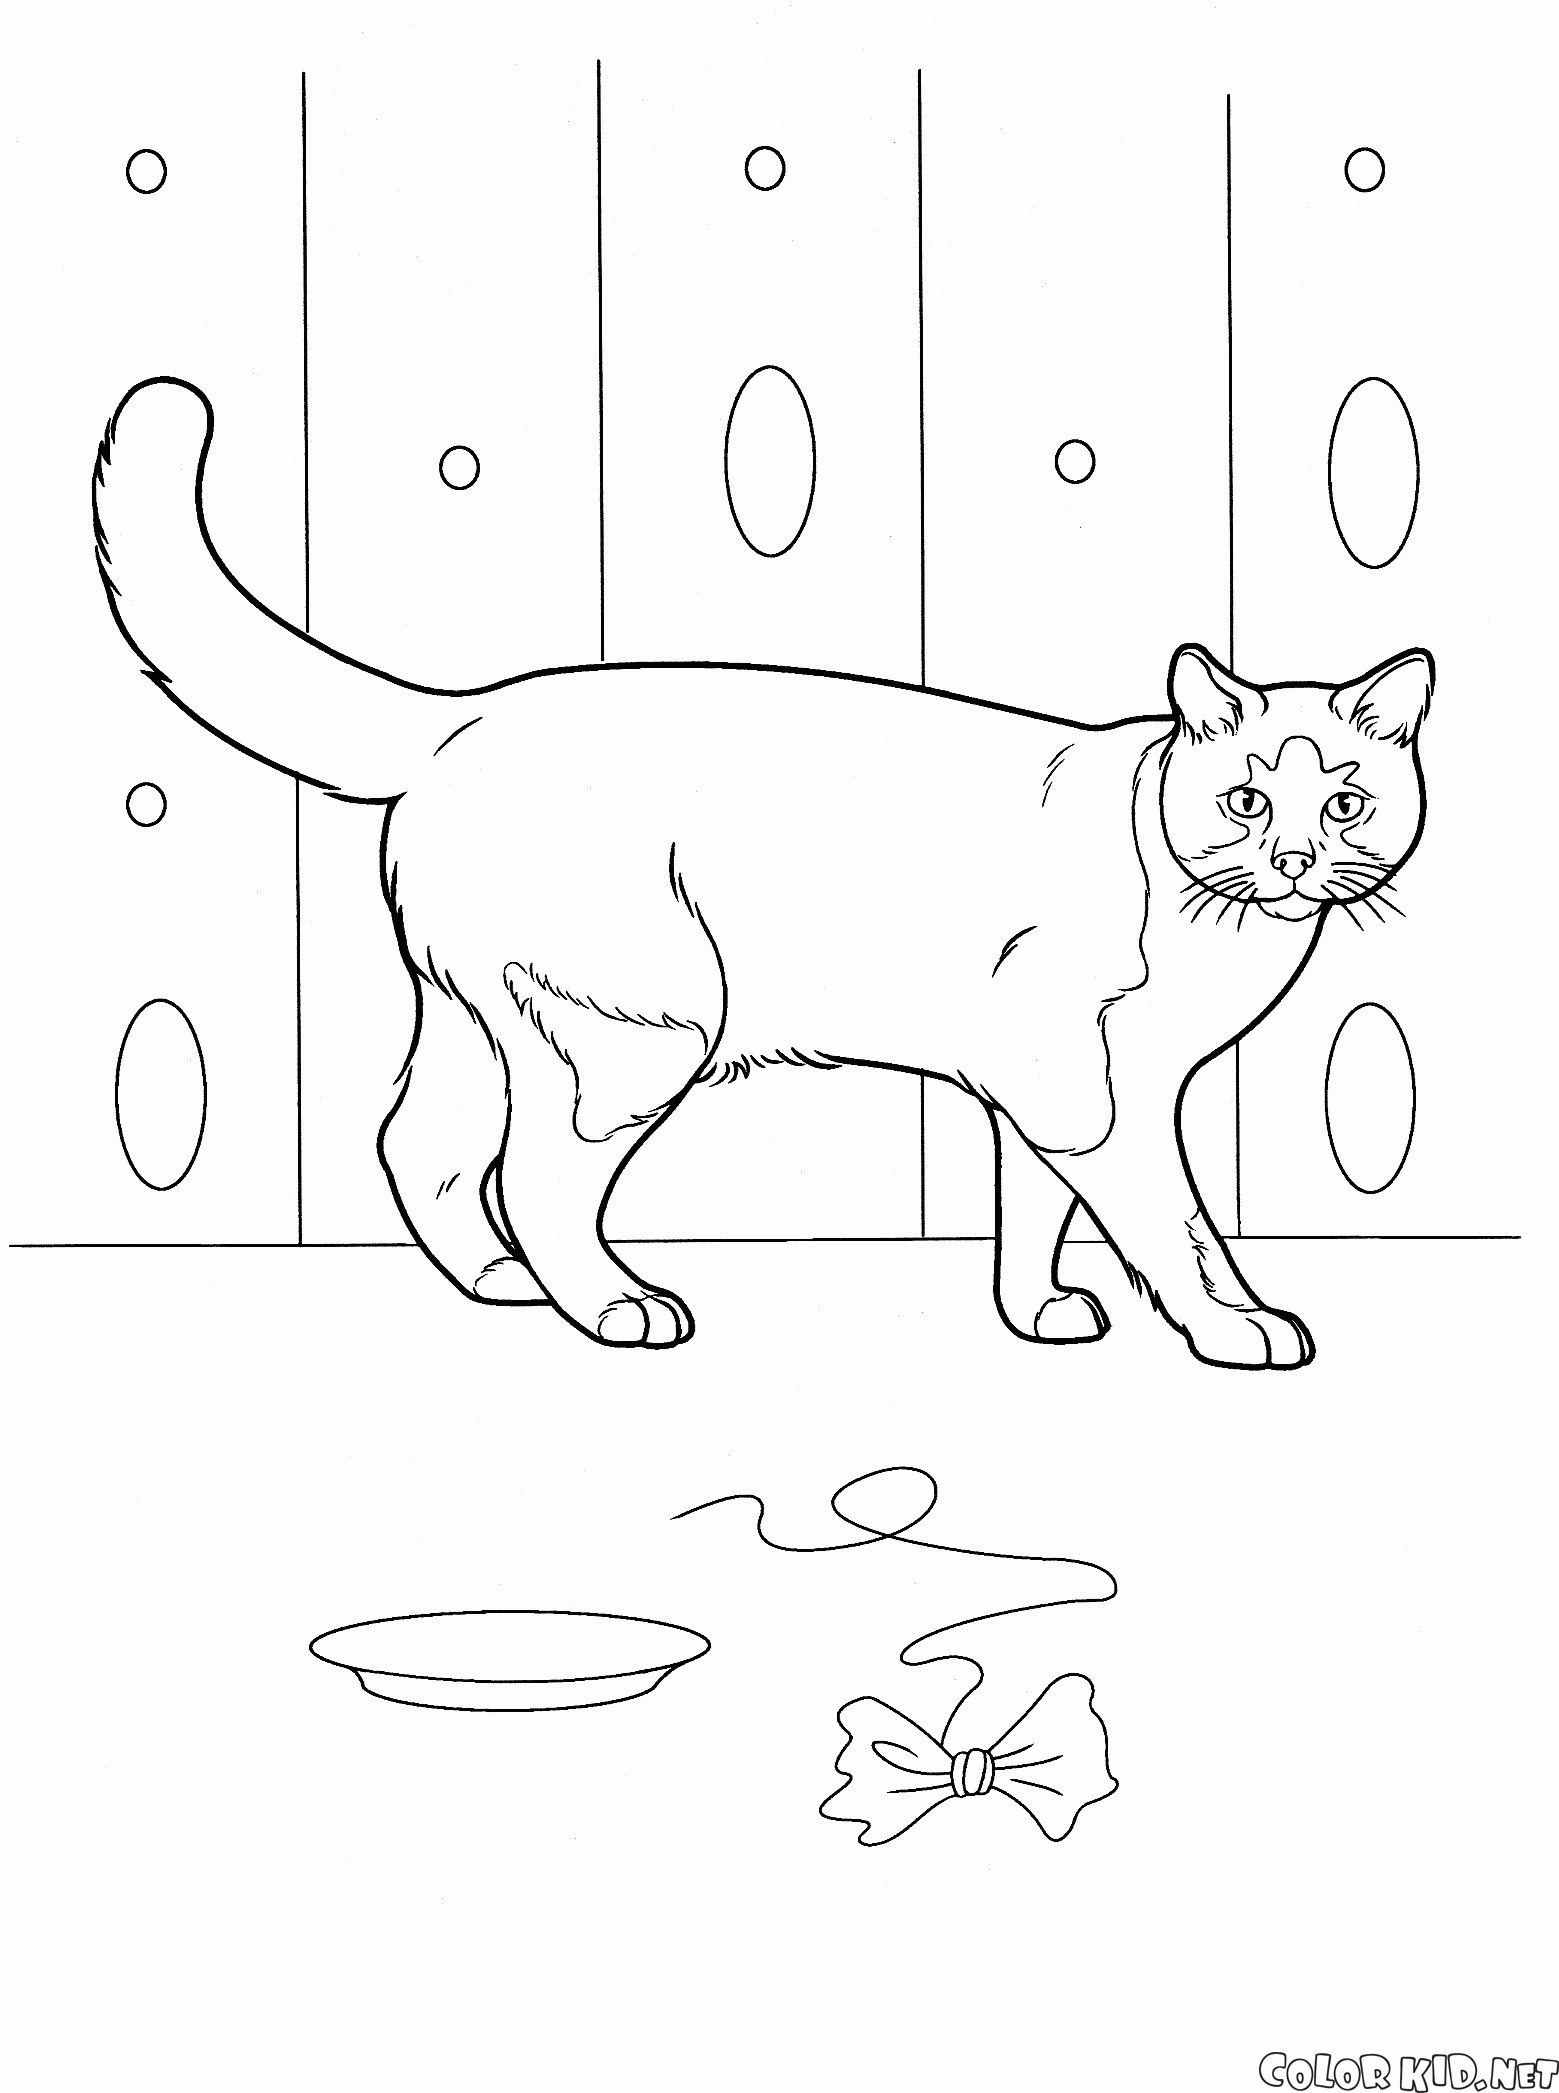 Dibujo Para Colorear Gato Domestico